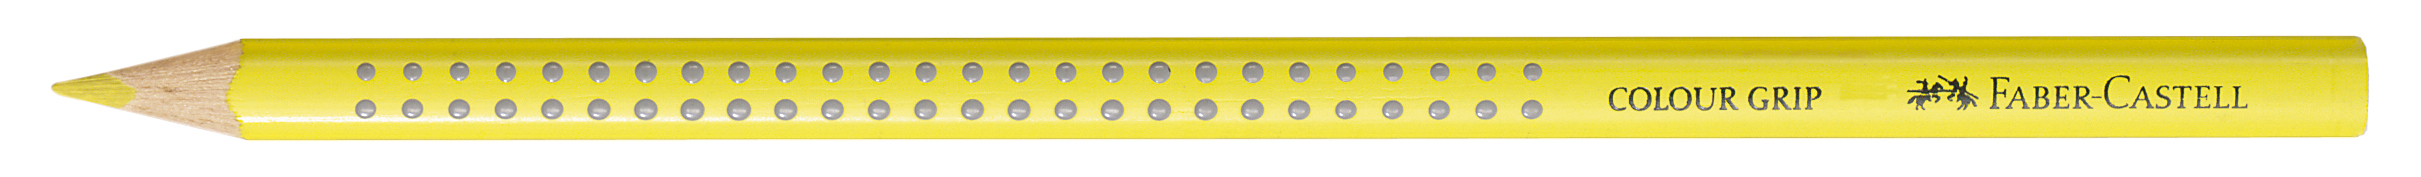 FABER-CASTELL Crayon de couleur Colour Grip 112405 jaune cadmium